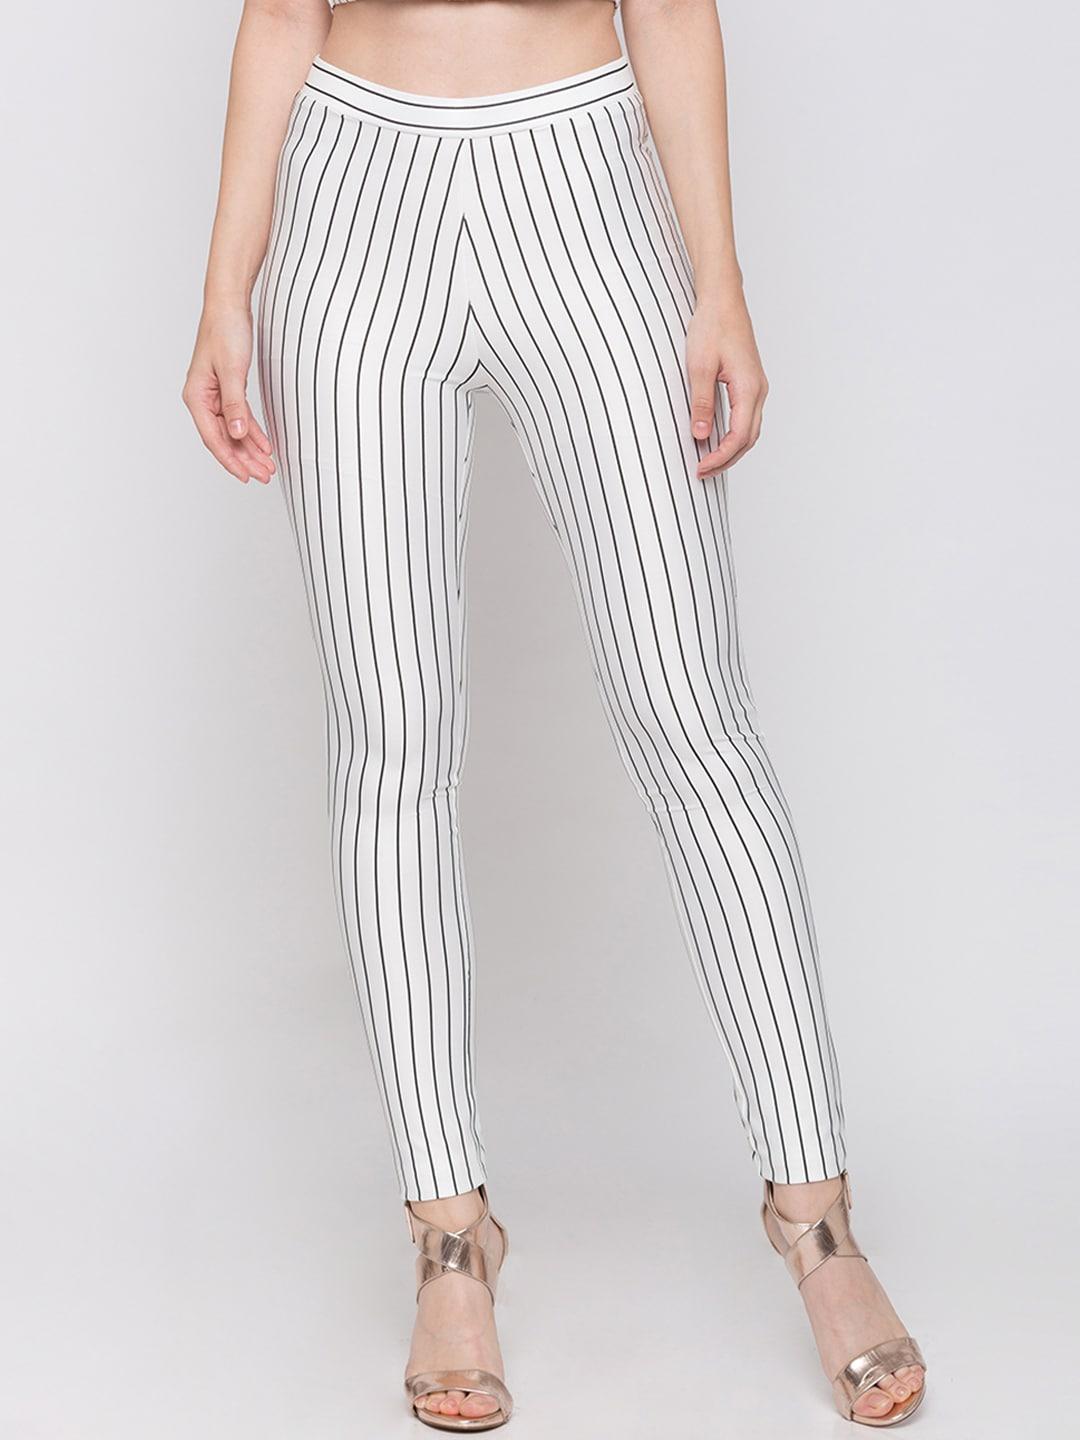 globus-women-white-&-black-striped-skinny-fit-treggings